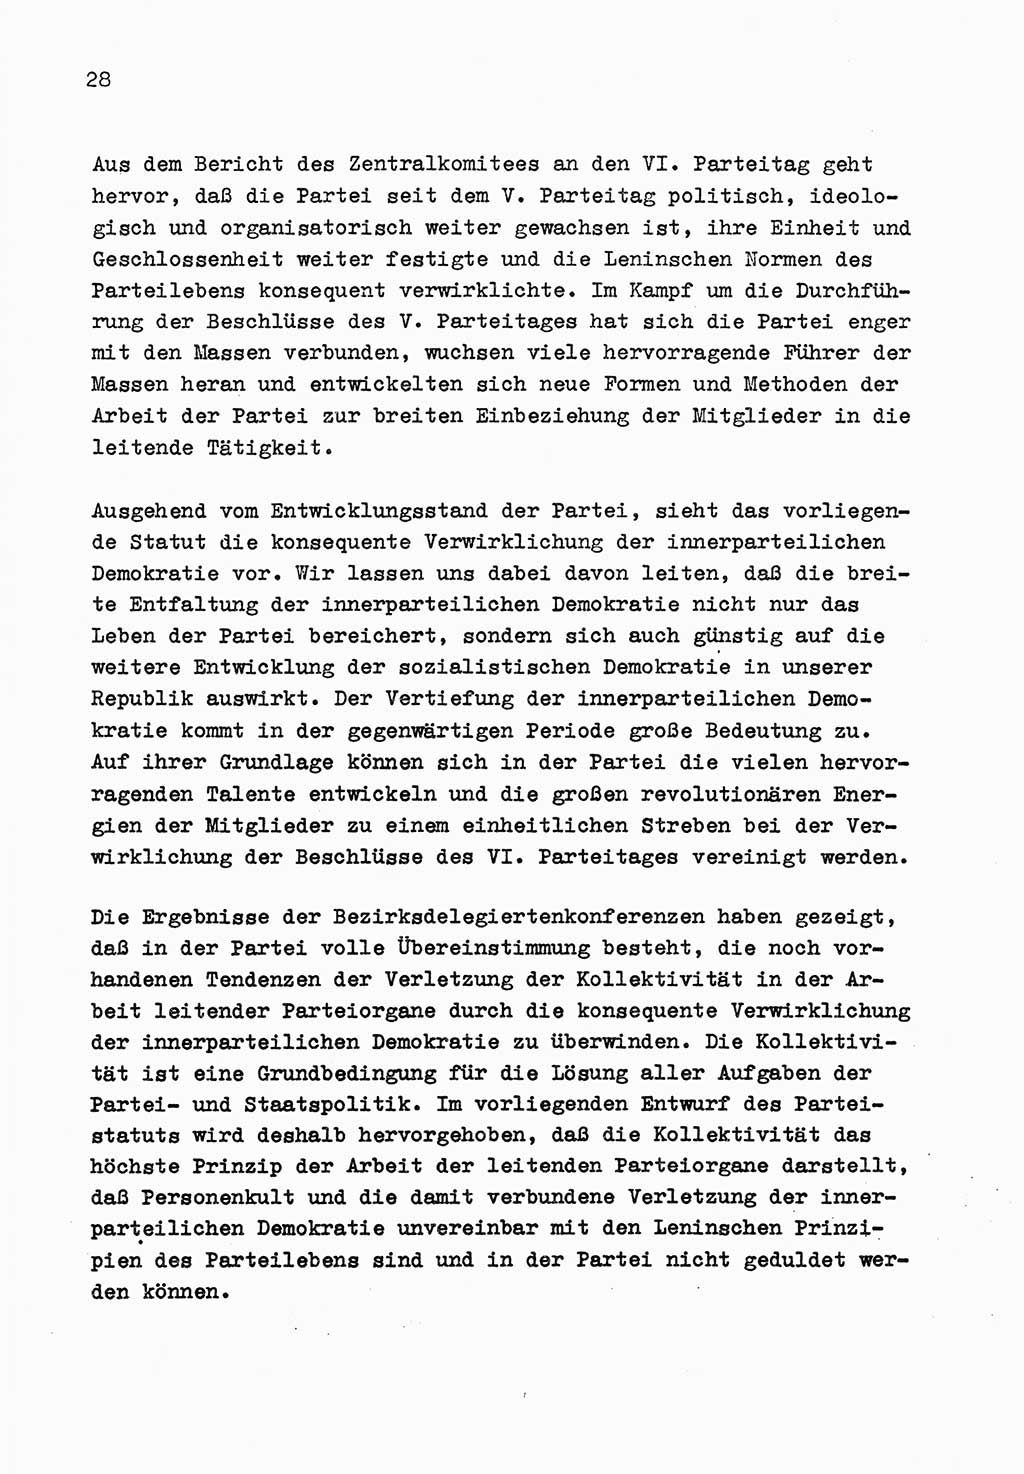 Zu Fragen der Parteiarbeit [Sozialistische Einheitspartei Deutschlands (SED) Deutsche Demokratische Republik (DDR)] 1979, Seite 28 (Fr. PA SED DDR 1979, S. 28)